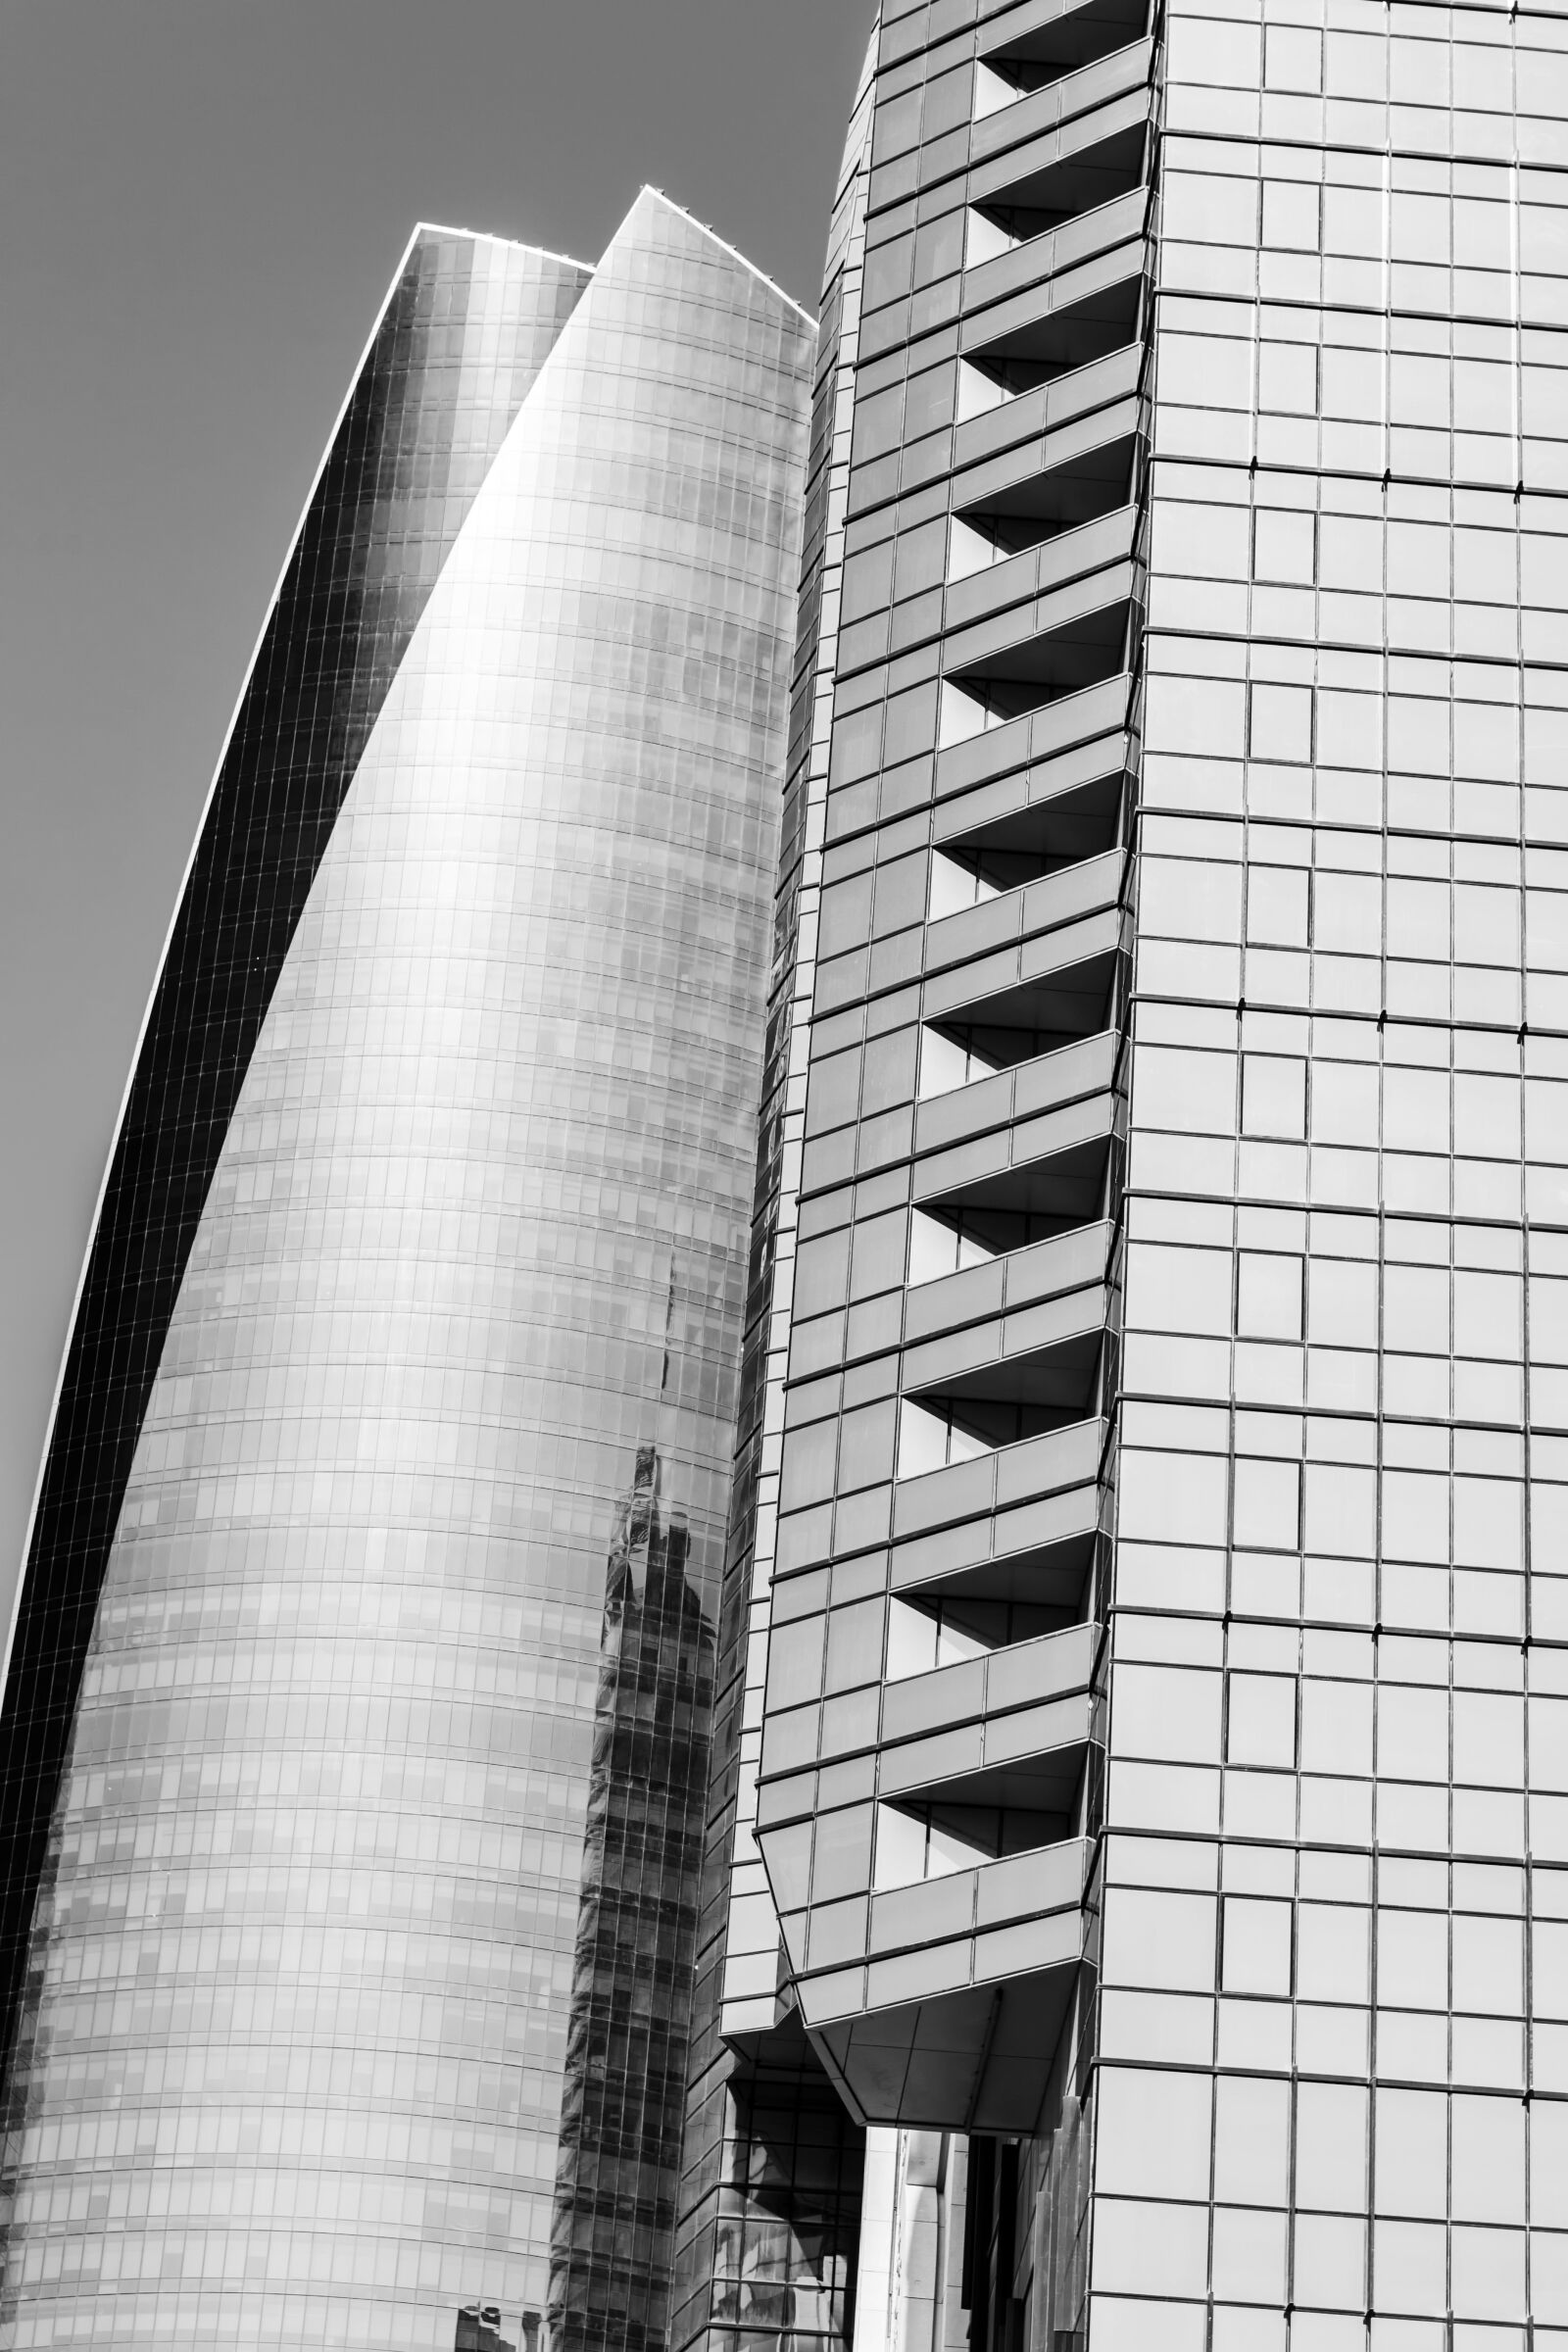 Canon EF 24-70mm F2.8L USM sample photo. Architecture, skyscraper, glass facades photography